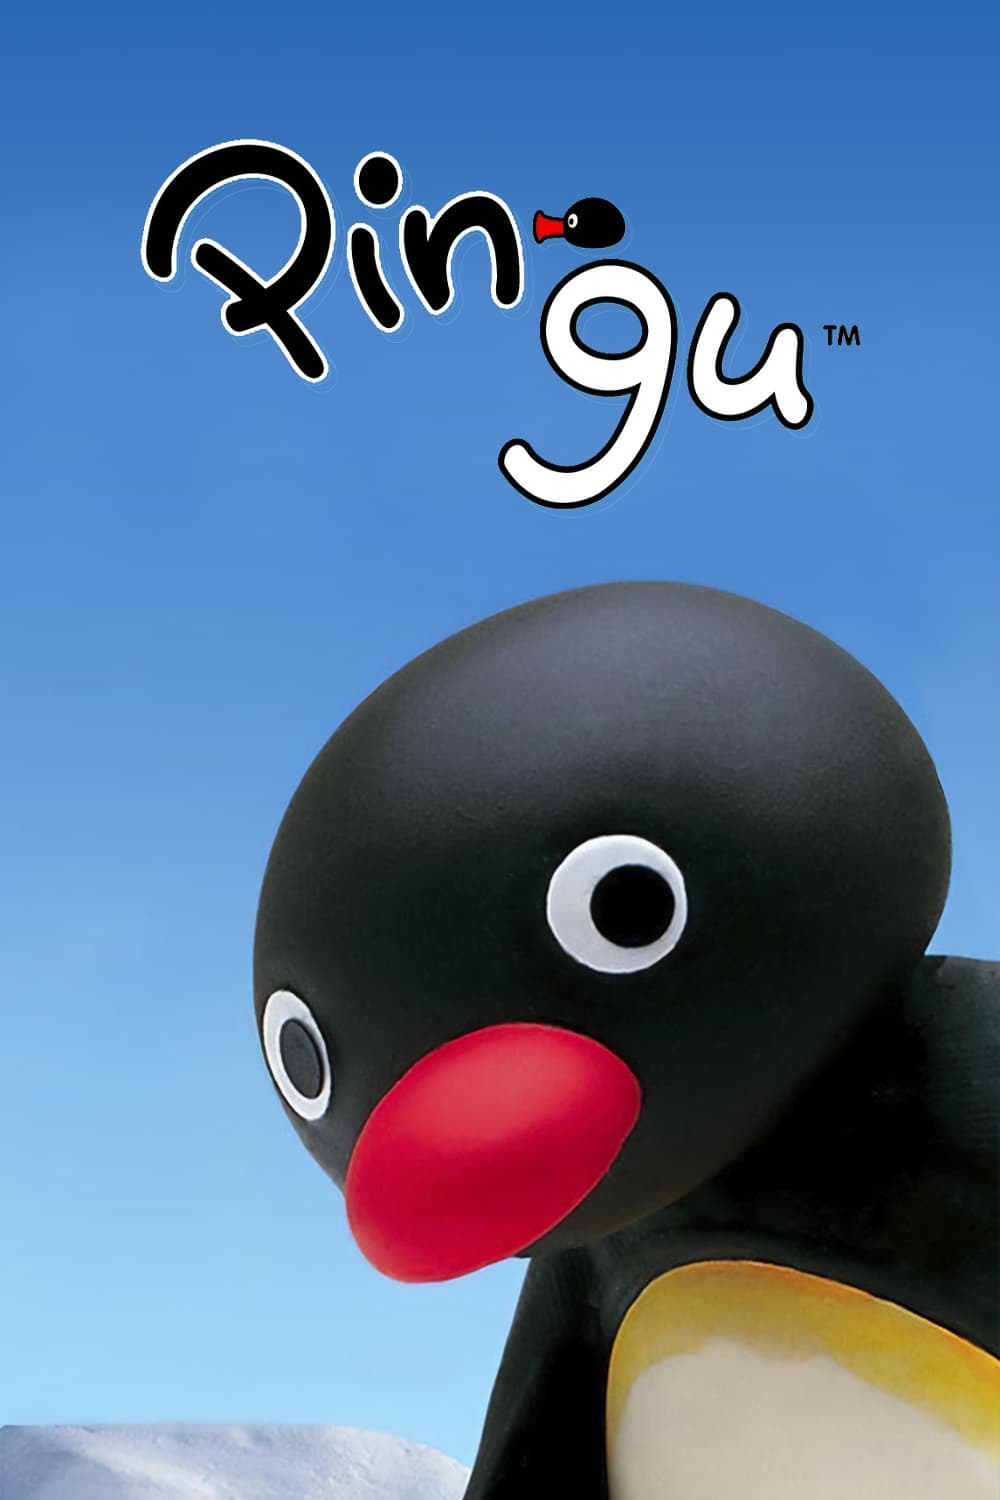 Pingu (1986)